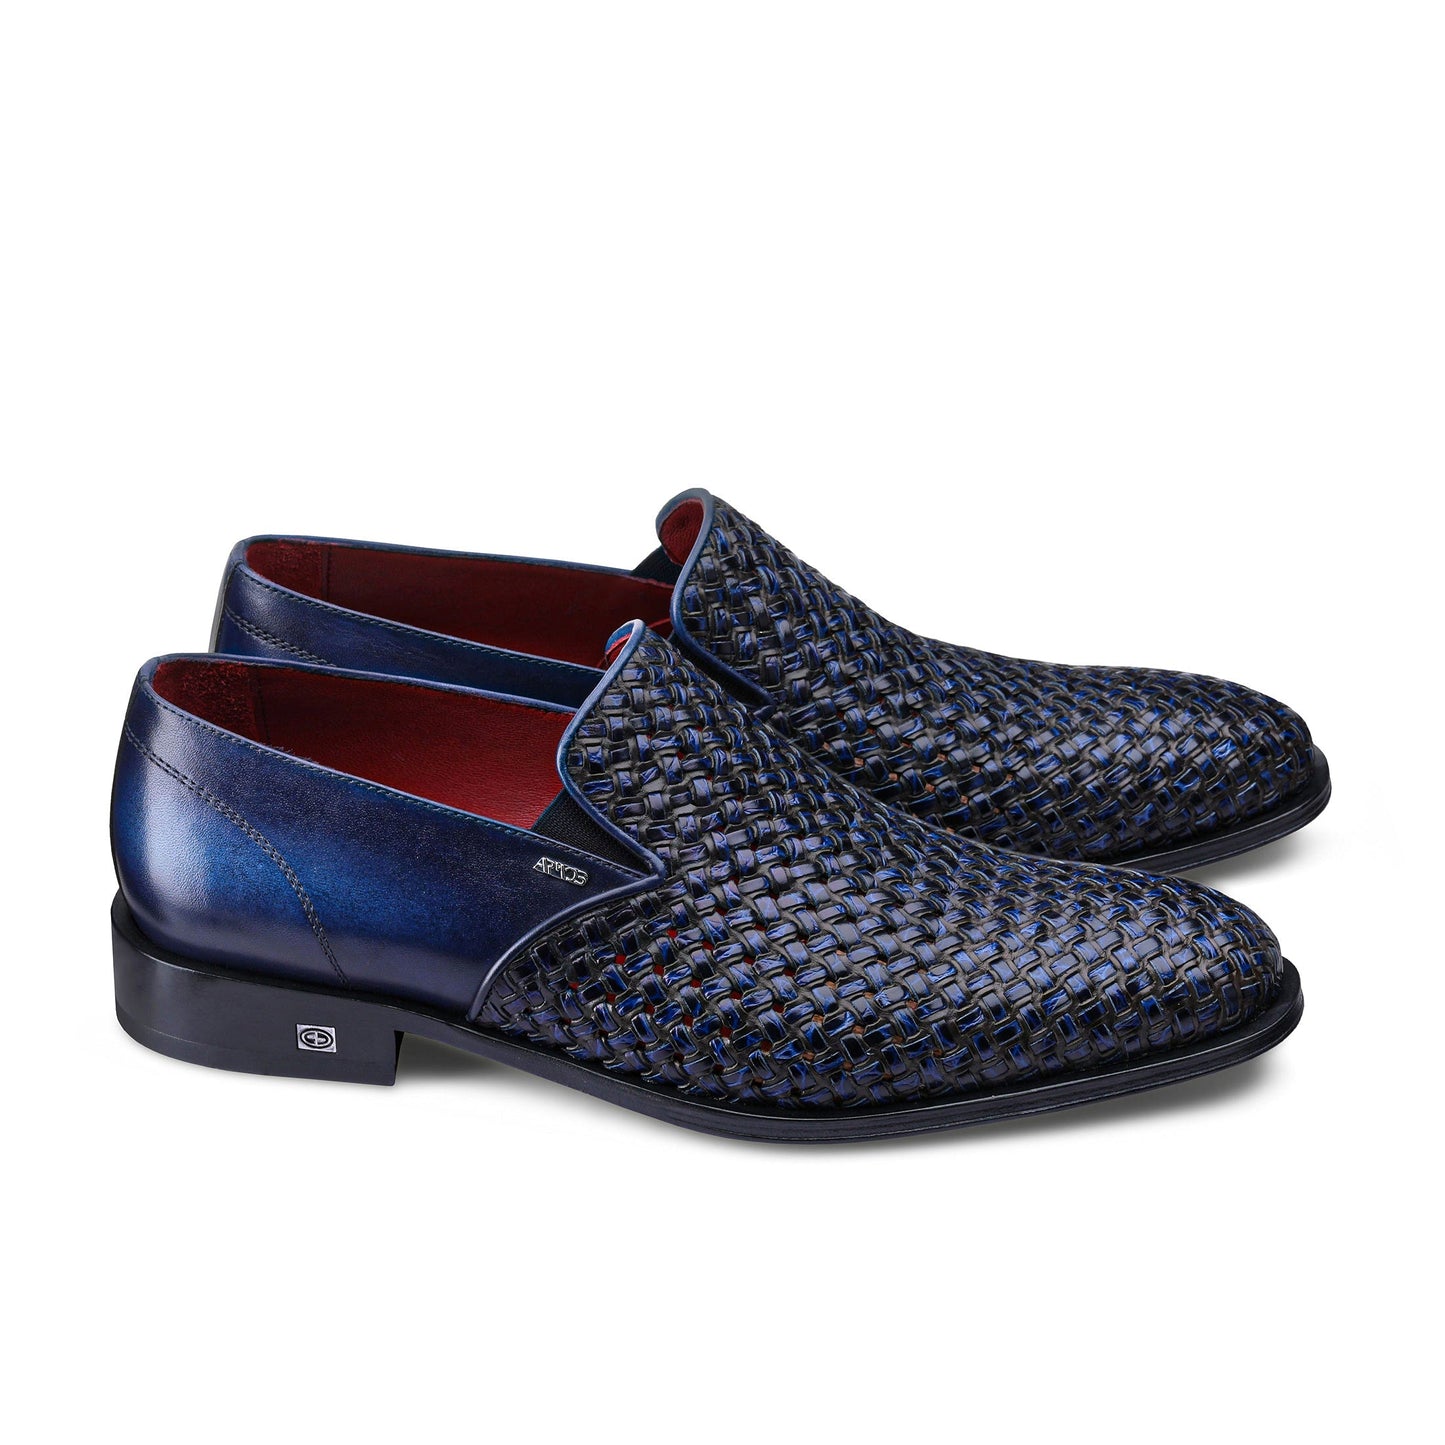 Blue woven shoes